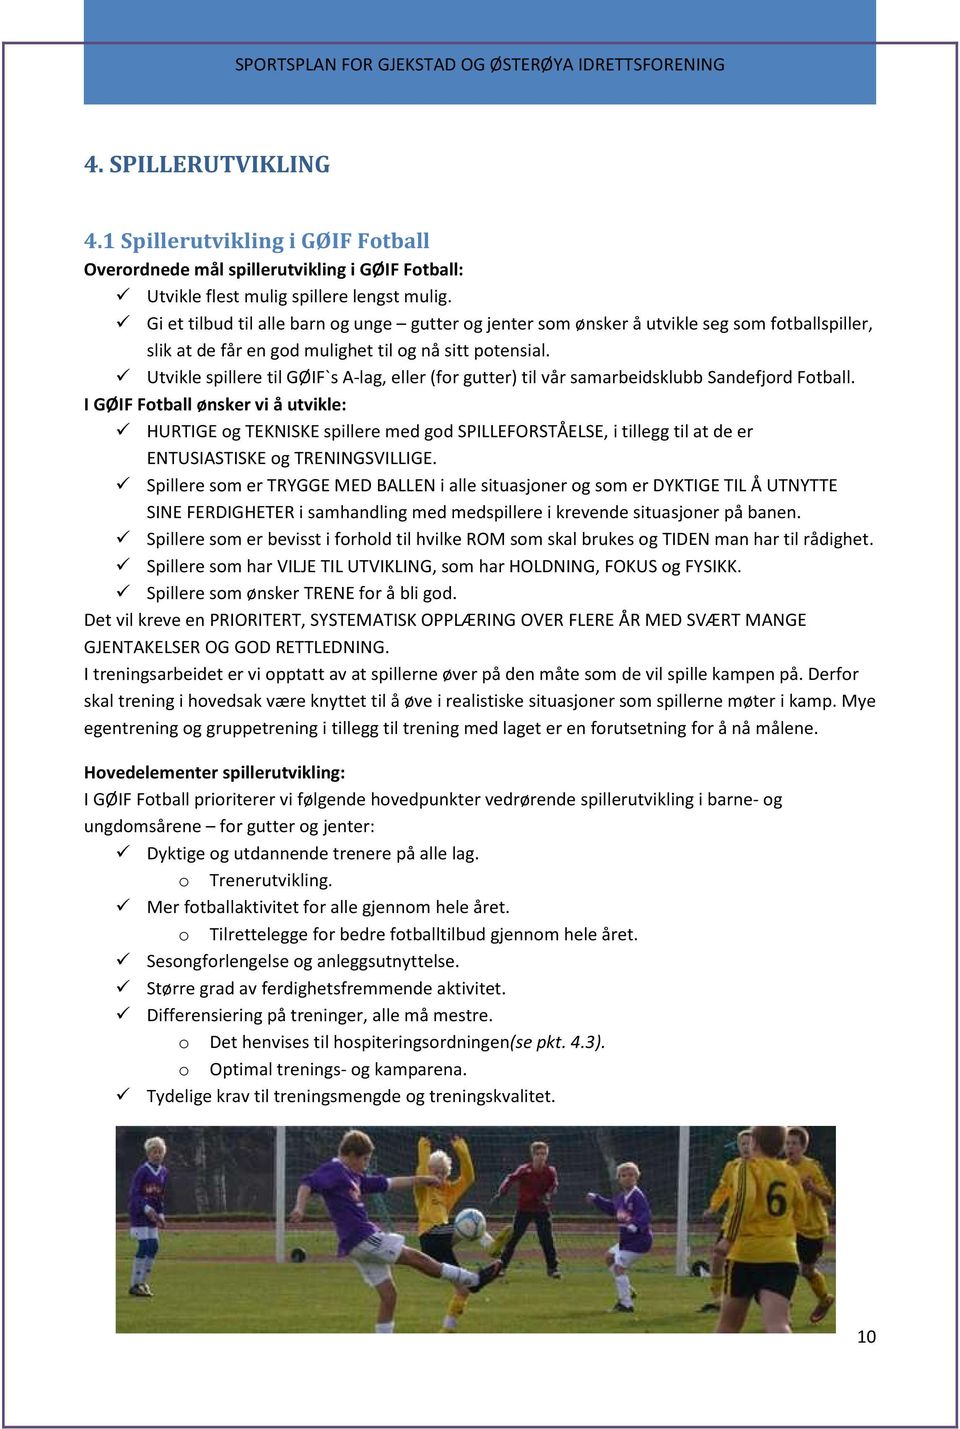 Utvikle spillere til GØIF`s A-lag, eller (for gutter) til vår samarbeidsklubb Sandefjord Fotball.